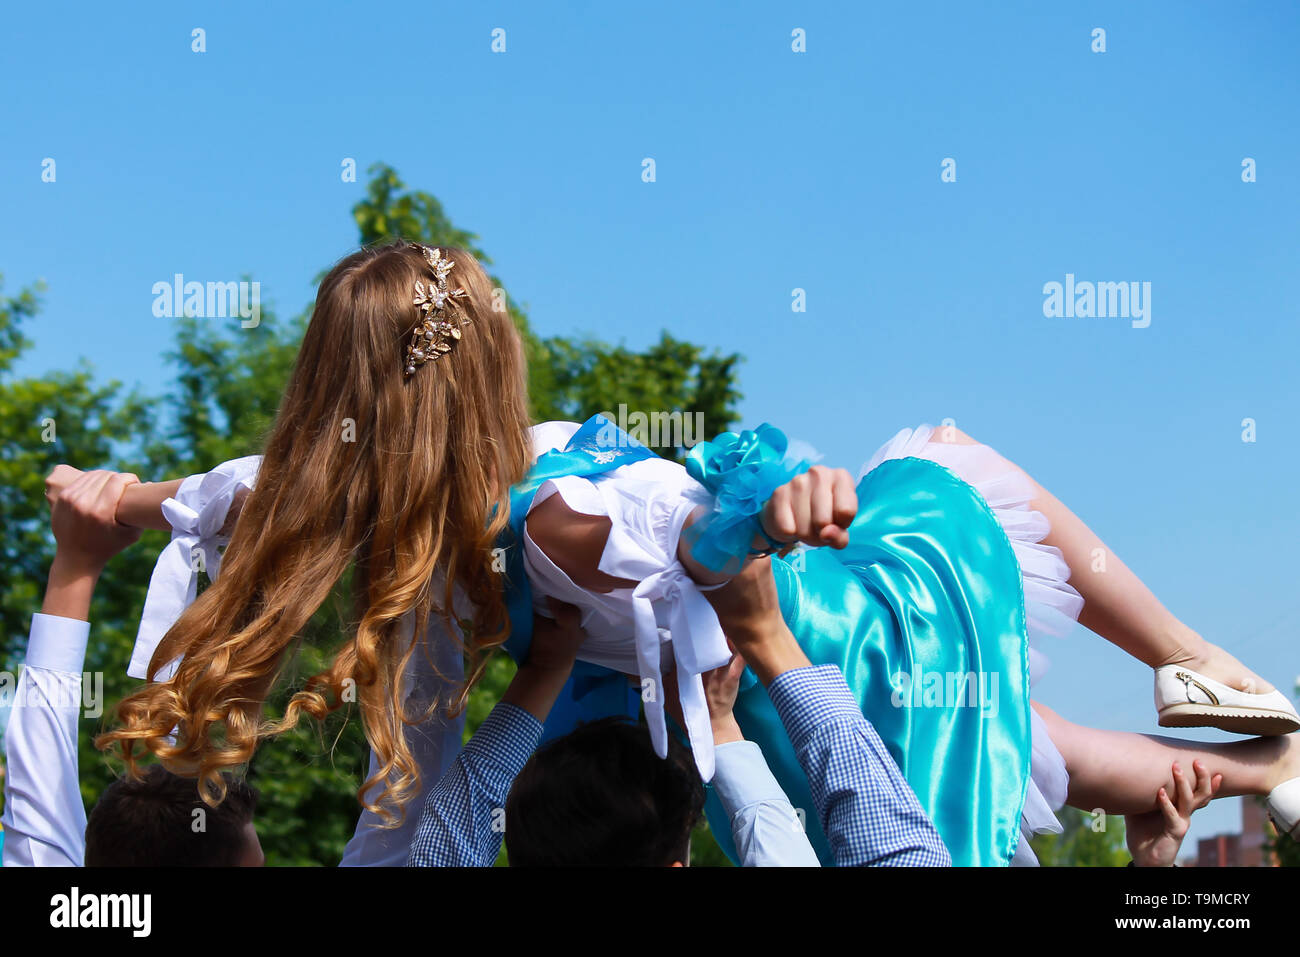 Das blonde Mädchen in der weiss-blauen Dress auf dem erhöhten männlichen Hände beim Tanzen. Hochzeit, Geburtstag, Staffelung. Urlaub, Frühling und Sommer Stockfoto